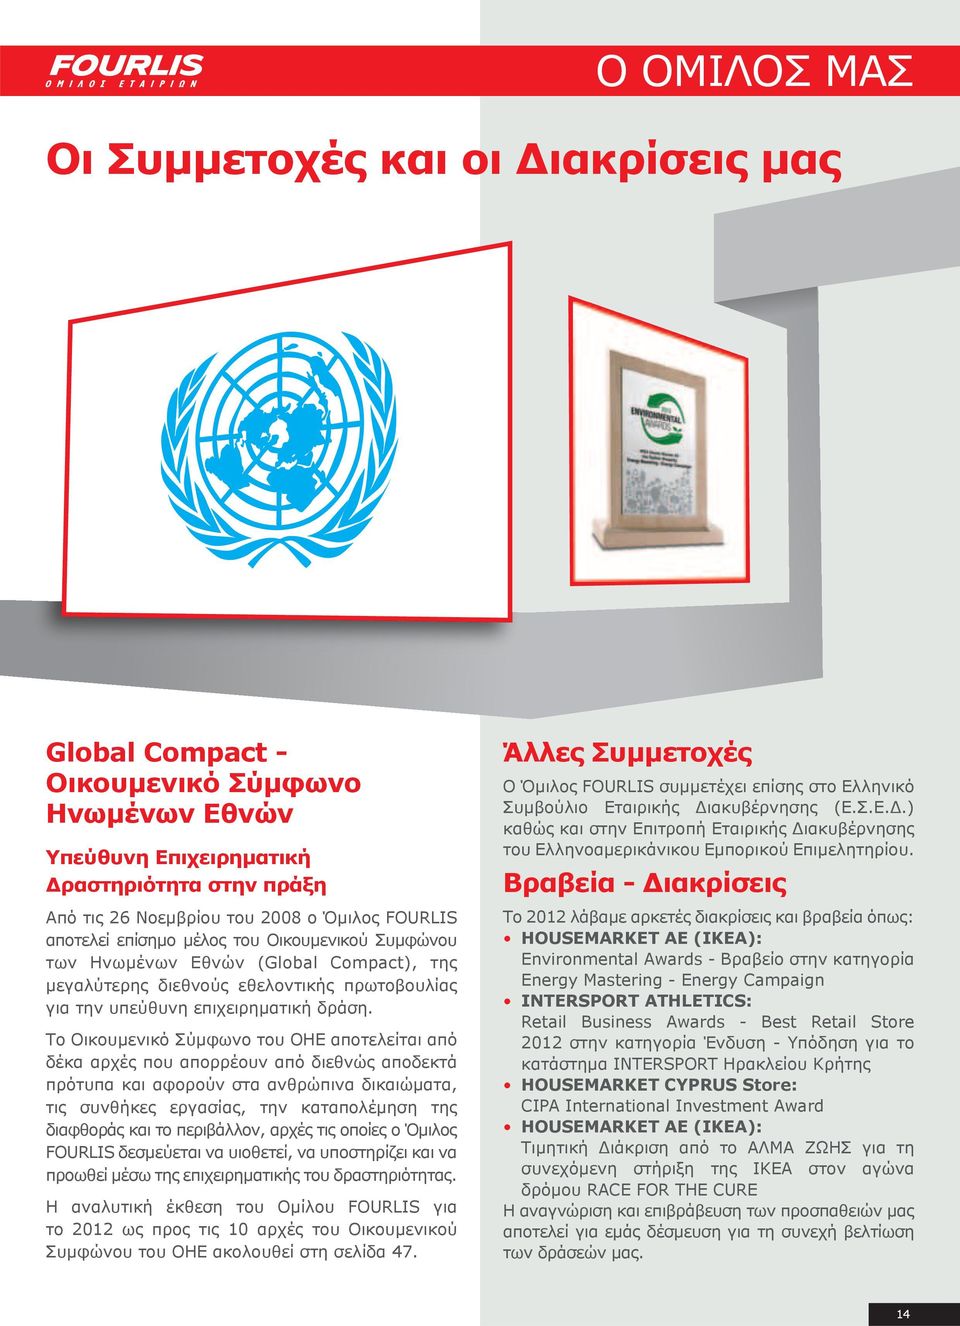 Το Οικουμενικό Σύμφωνο του ΟΗΕ αποτελείται από δέκα αρχές που απορρέουν από διεθνώς αποδεκτά πρότυπα και αφορούν στα ανθρώπινα δικαιώματα, τις συνθήκες εργασίας, την καταπολέμηση της διαφθοράς και το